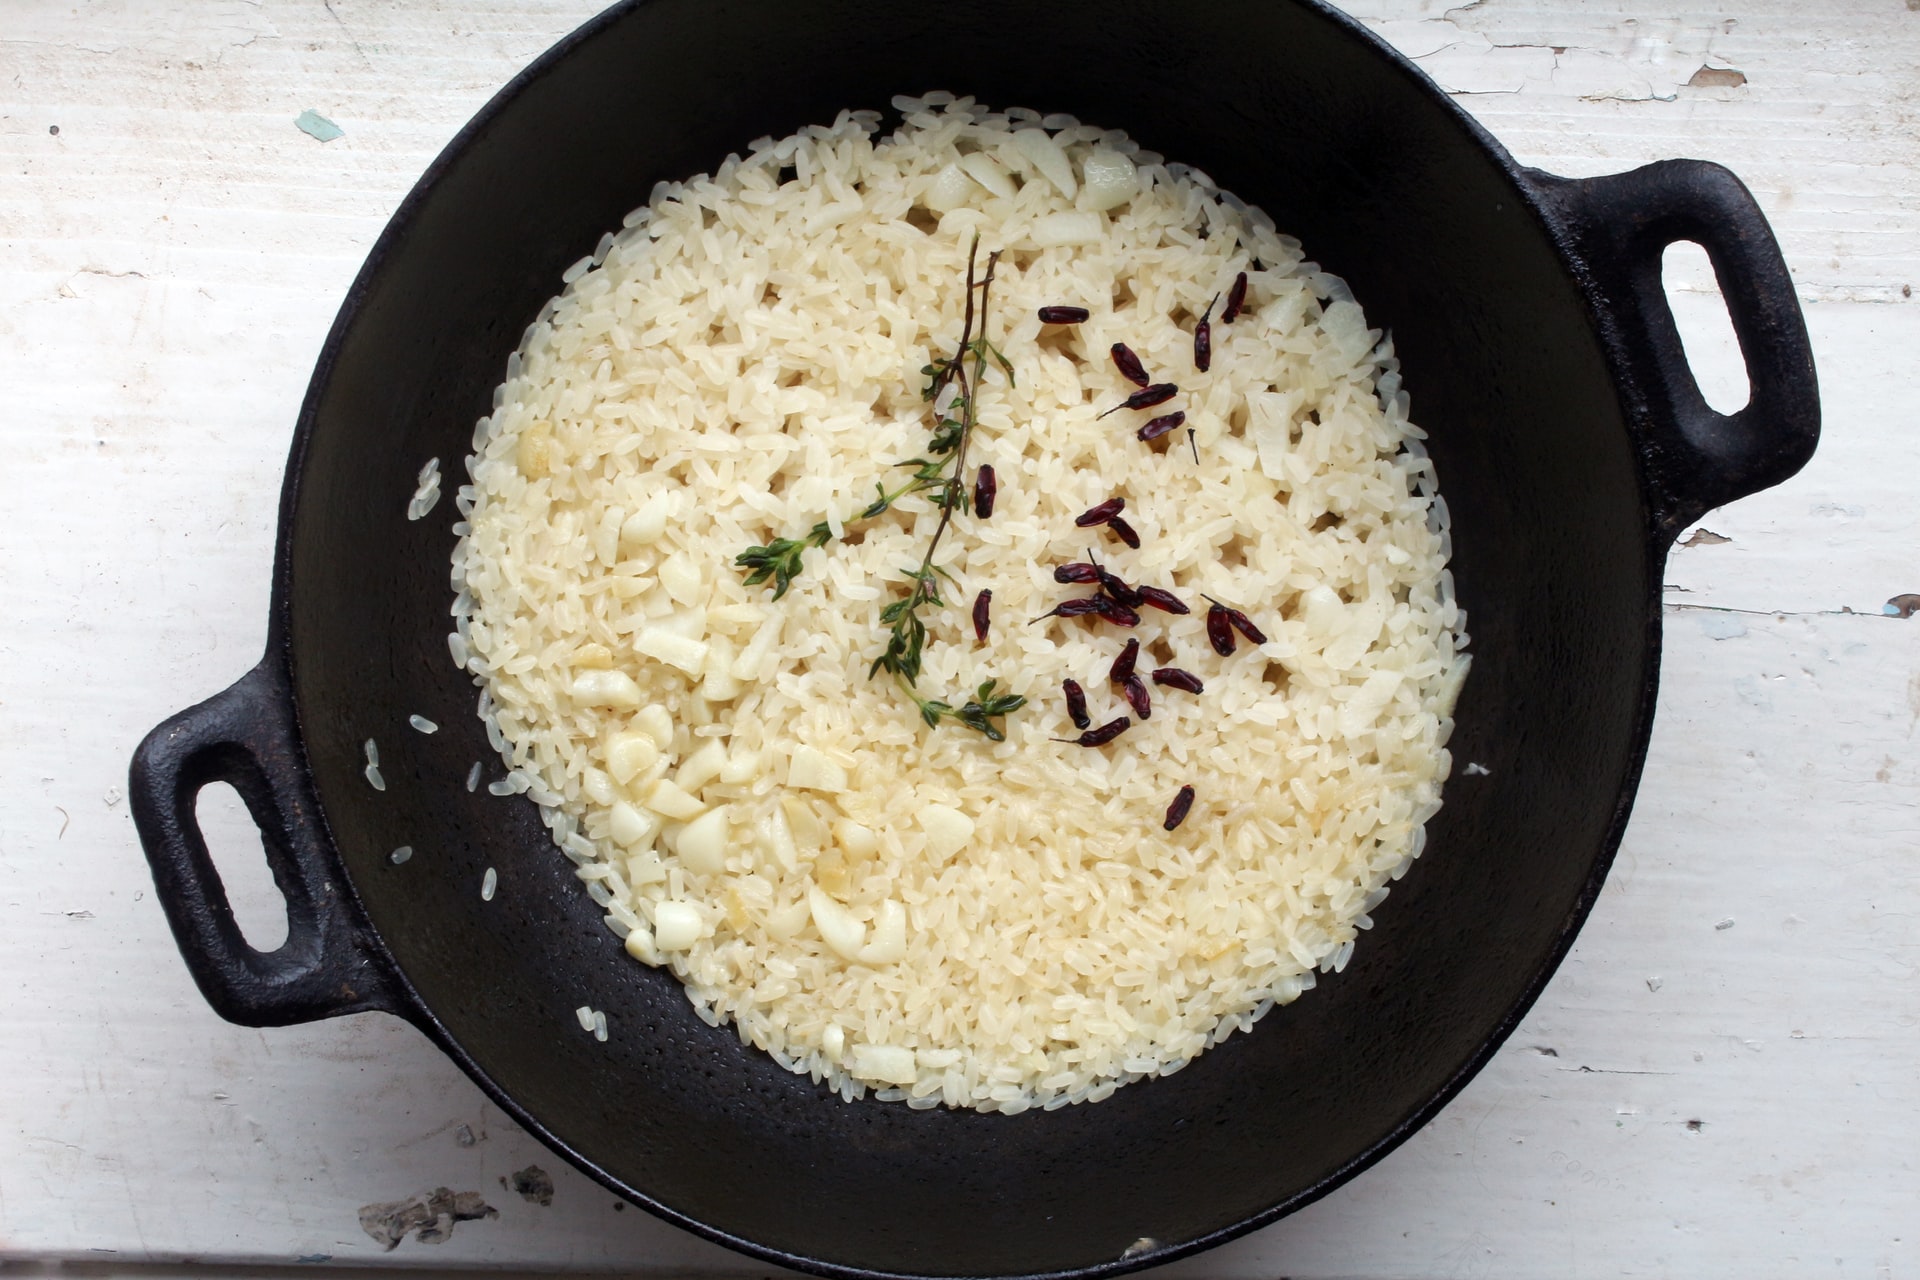 Crostata di riso salata